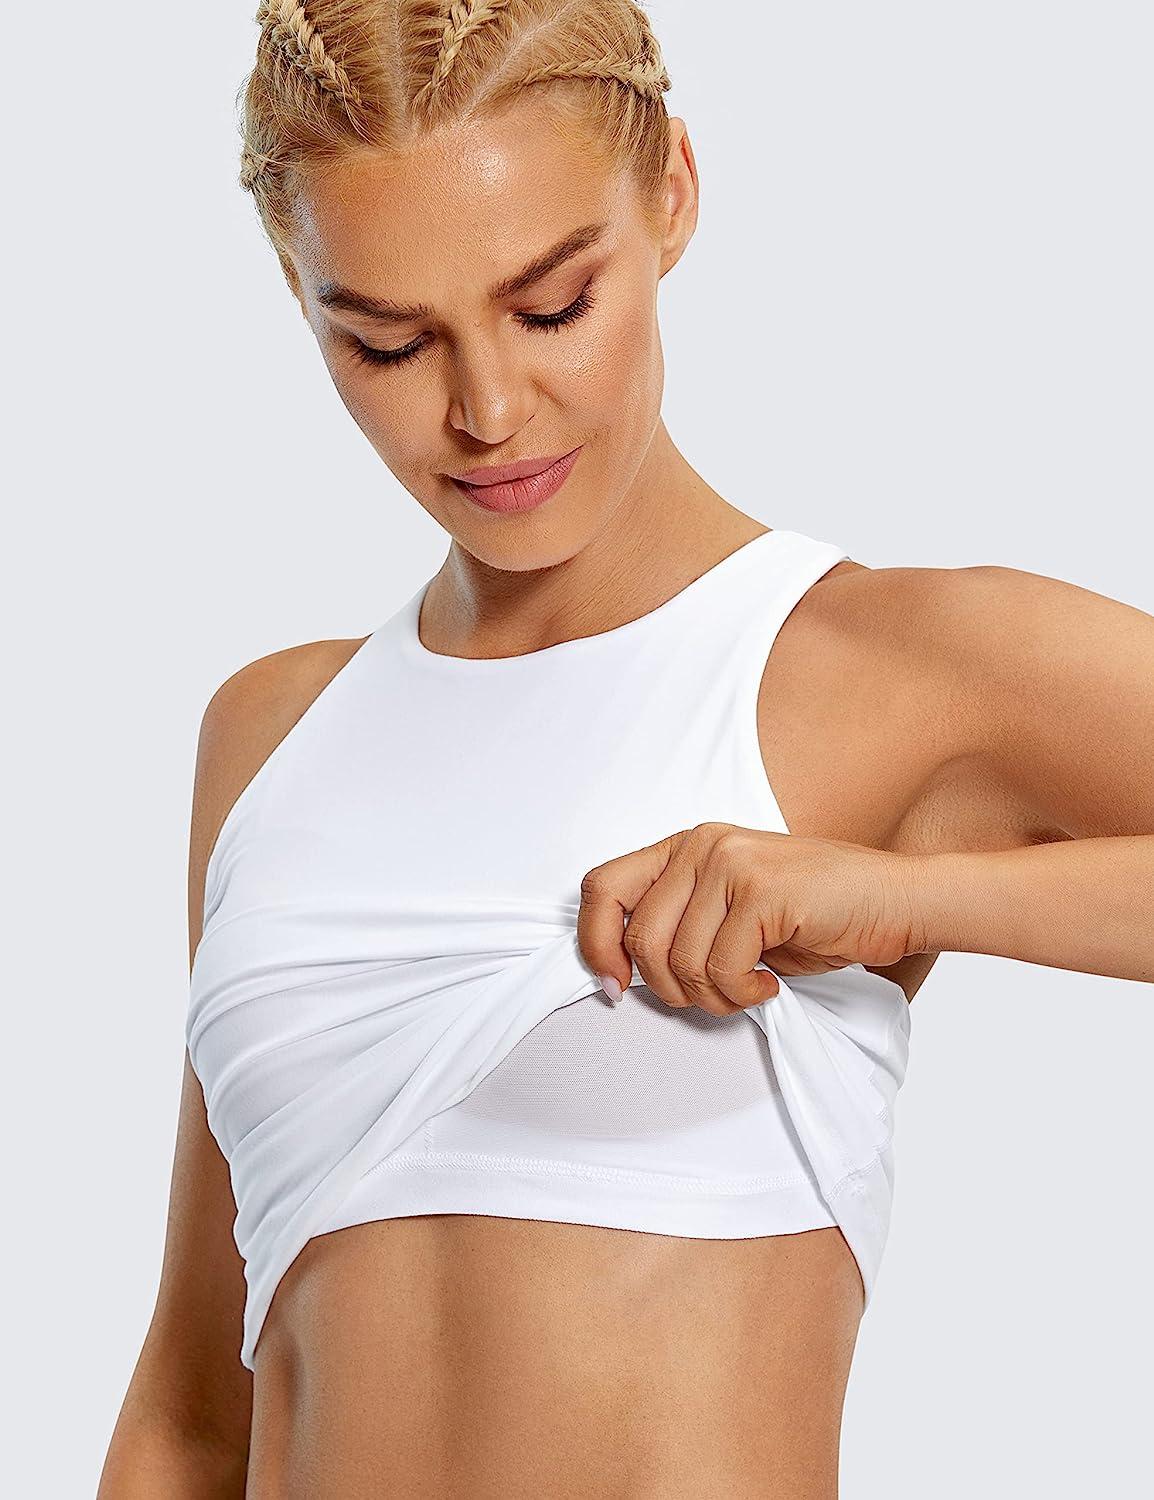 Buy Women's Racerback Sports Bra Yoga Crop Top with Built in Bra